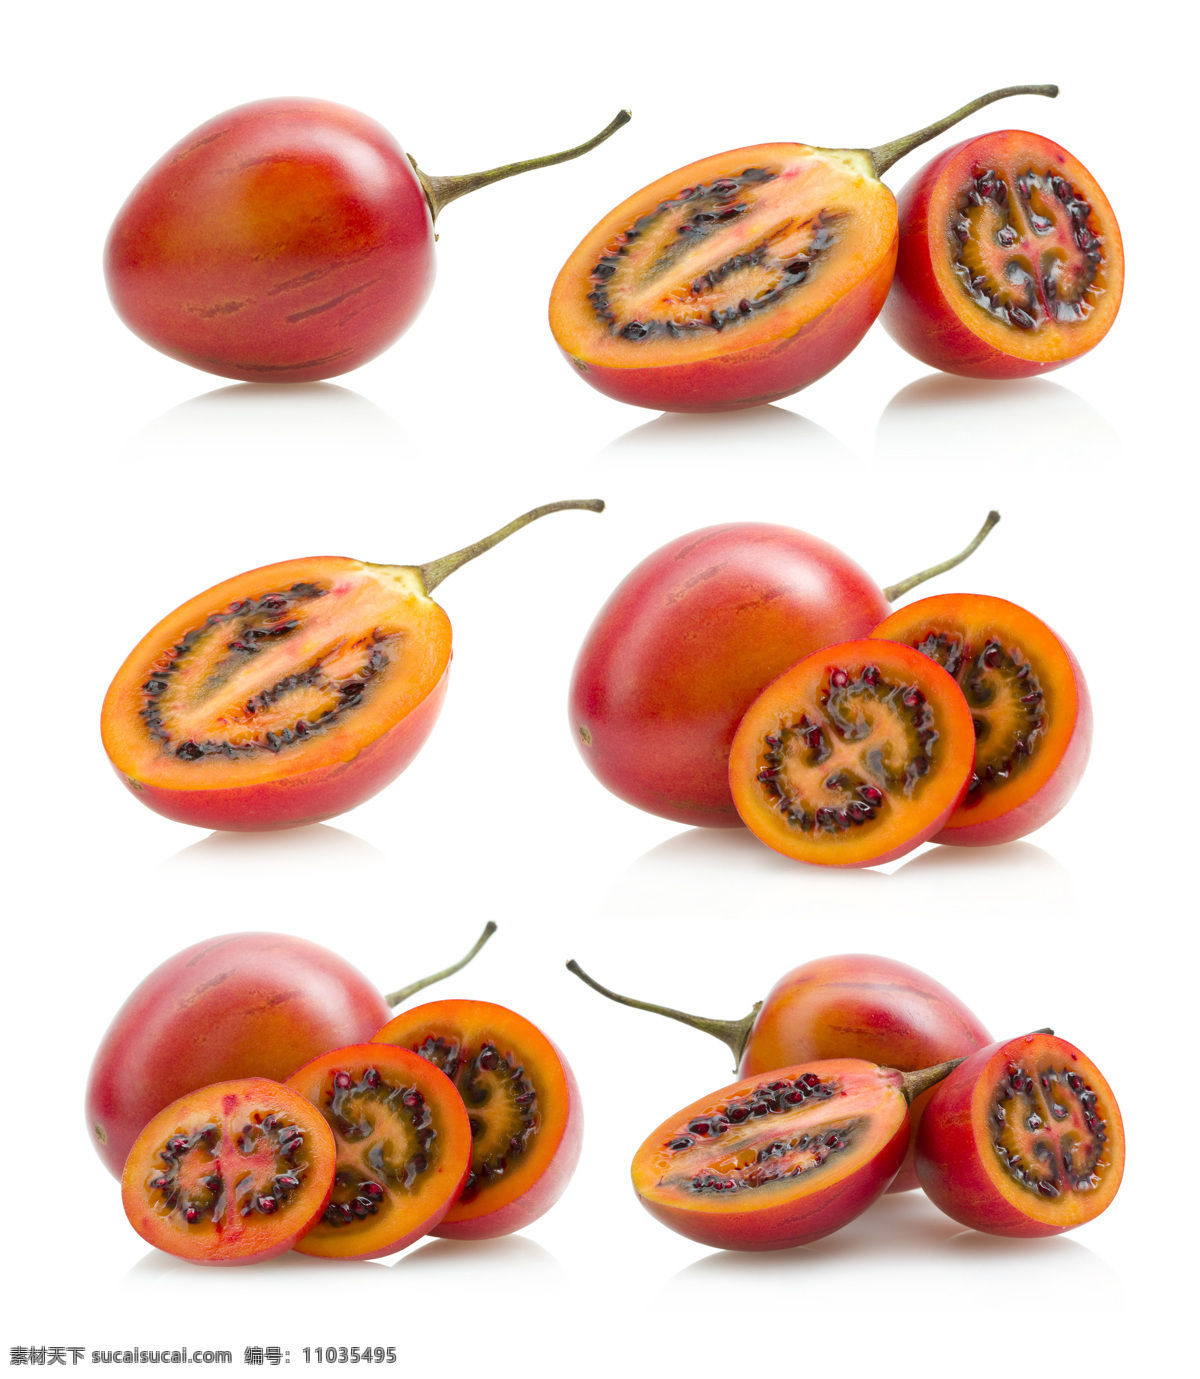 新鲜 番茄 树 新鲜树番茄 新鲜水果 果实 水果摄影 蔬菜图片 餐饮美食